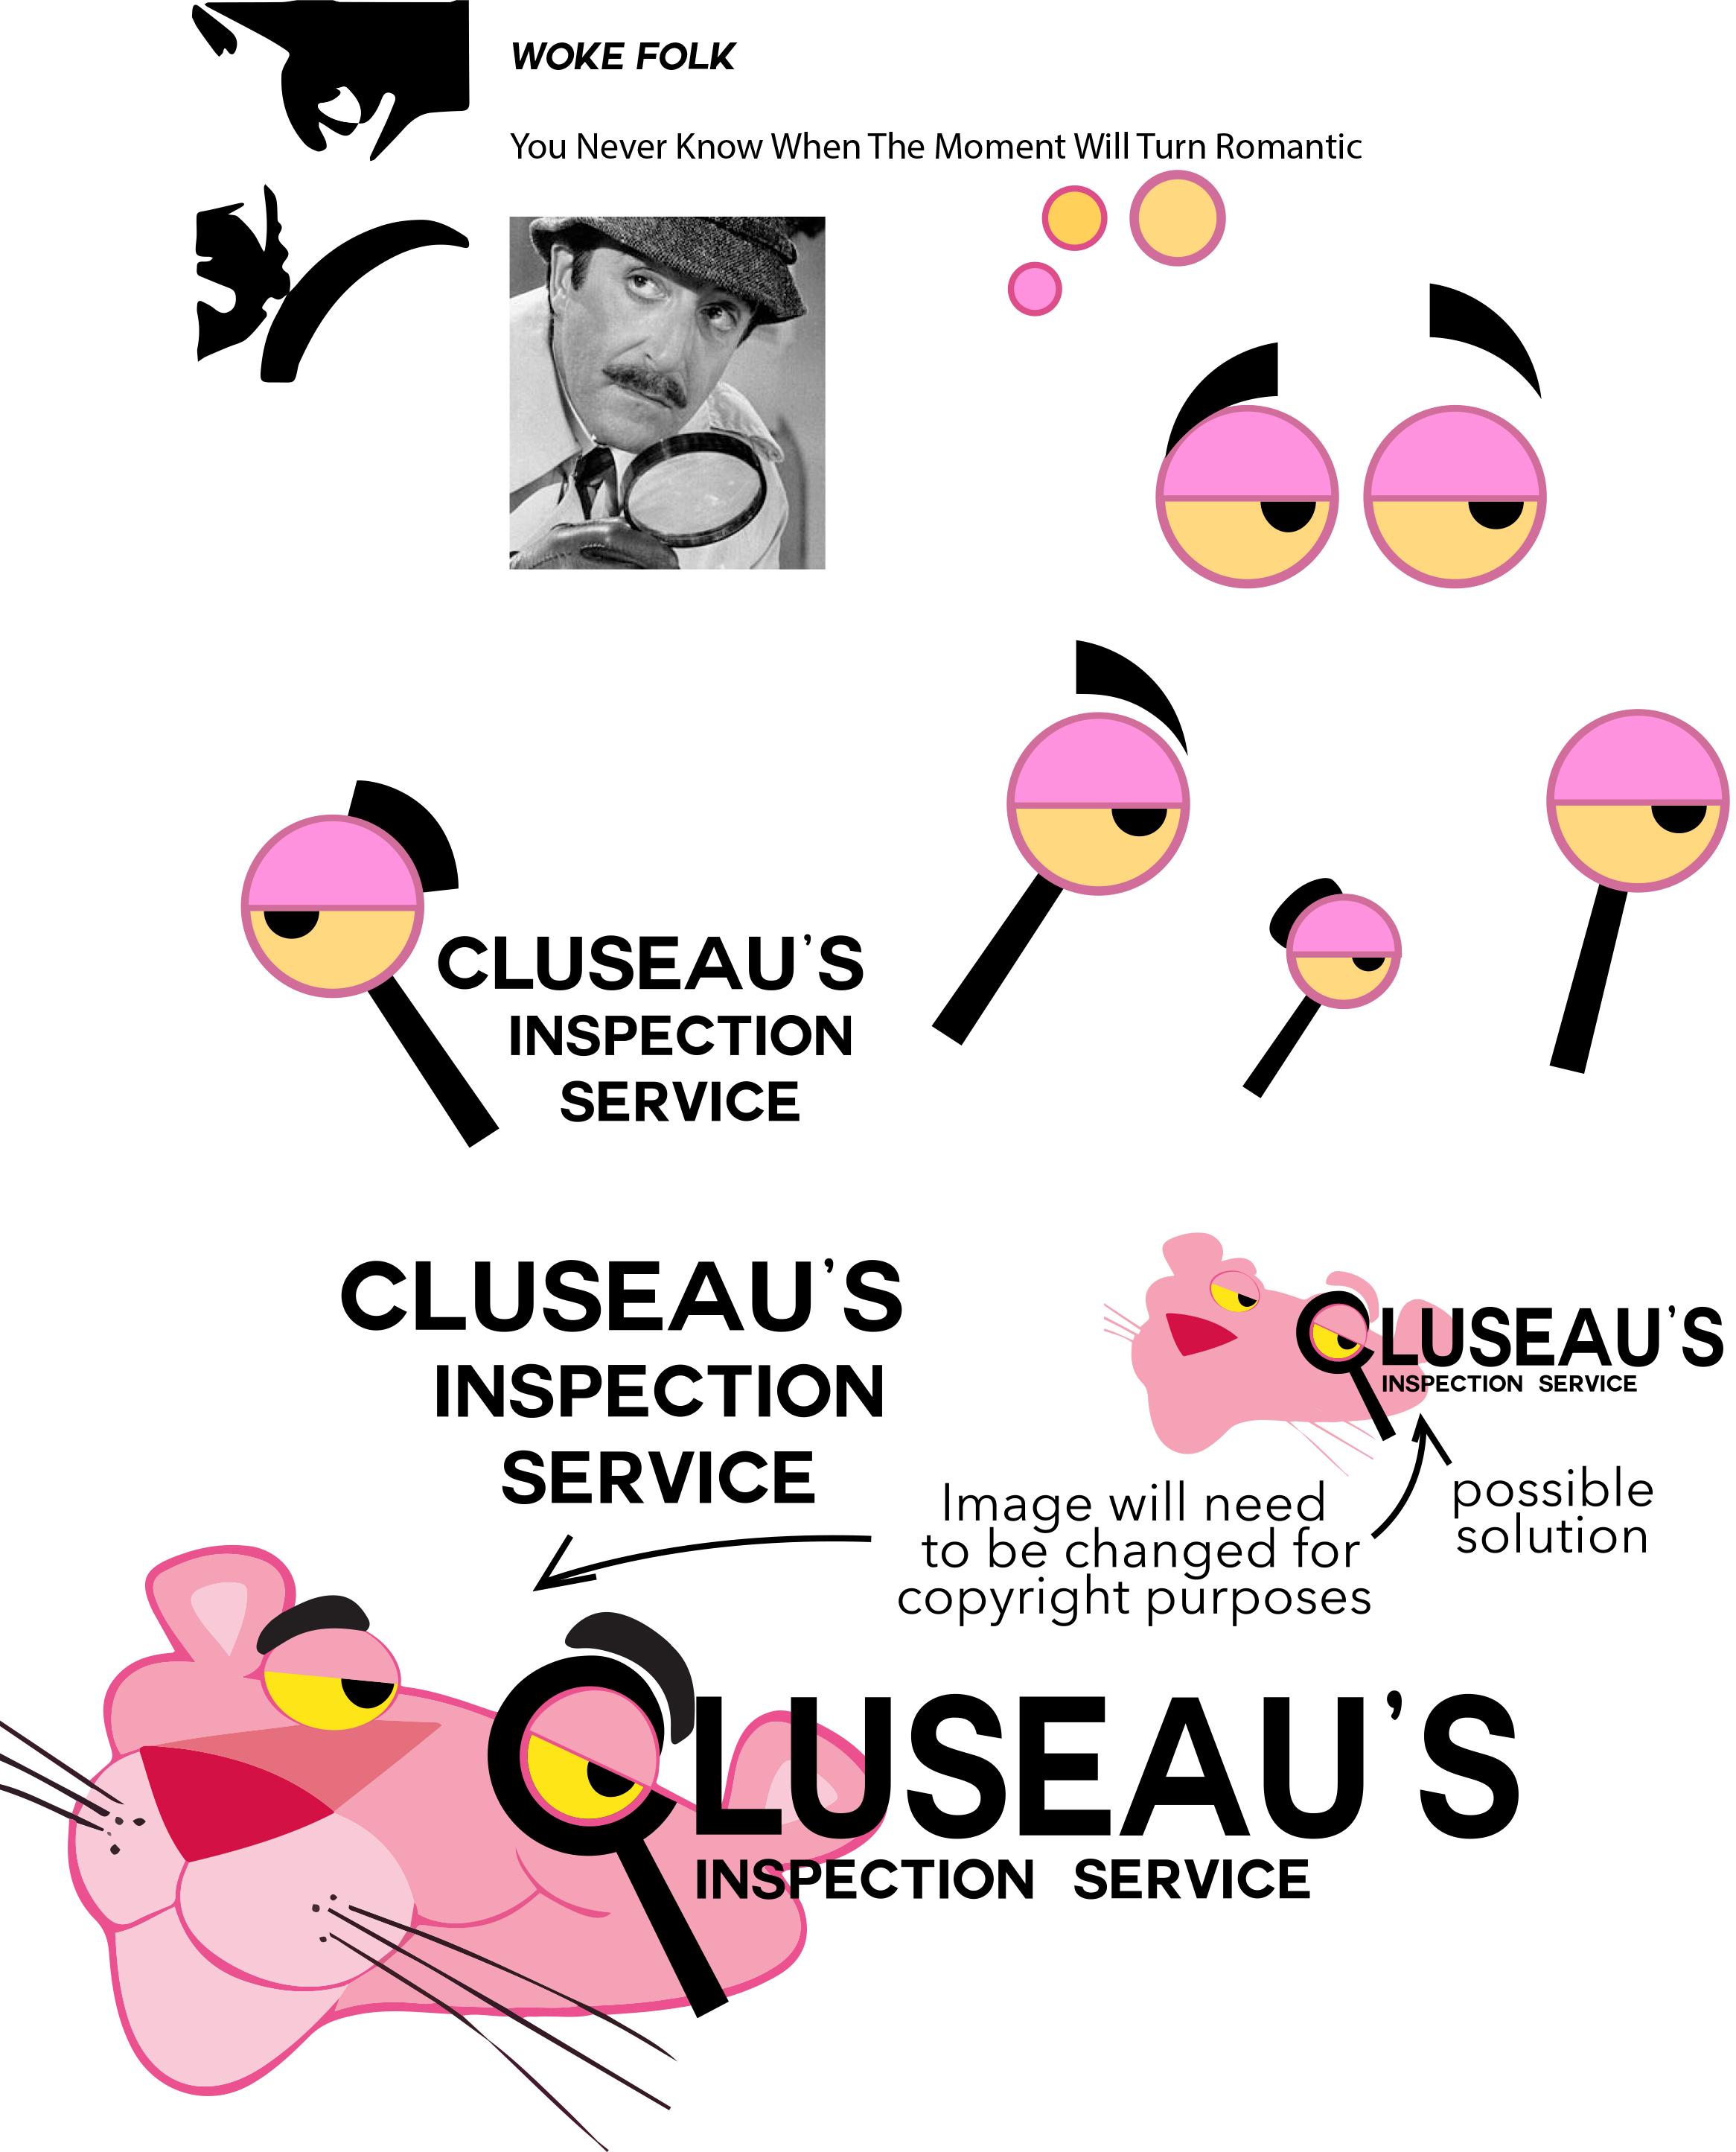 Clouseaus-1.jpg